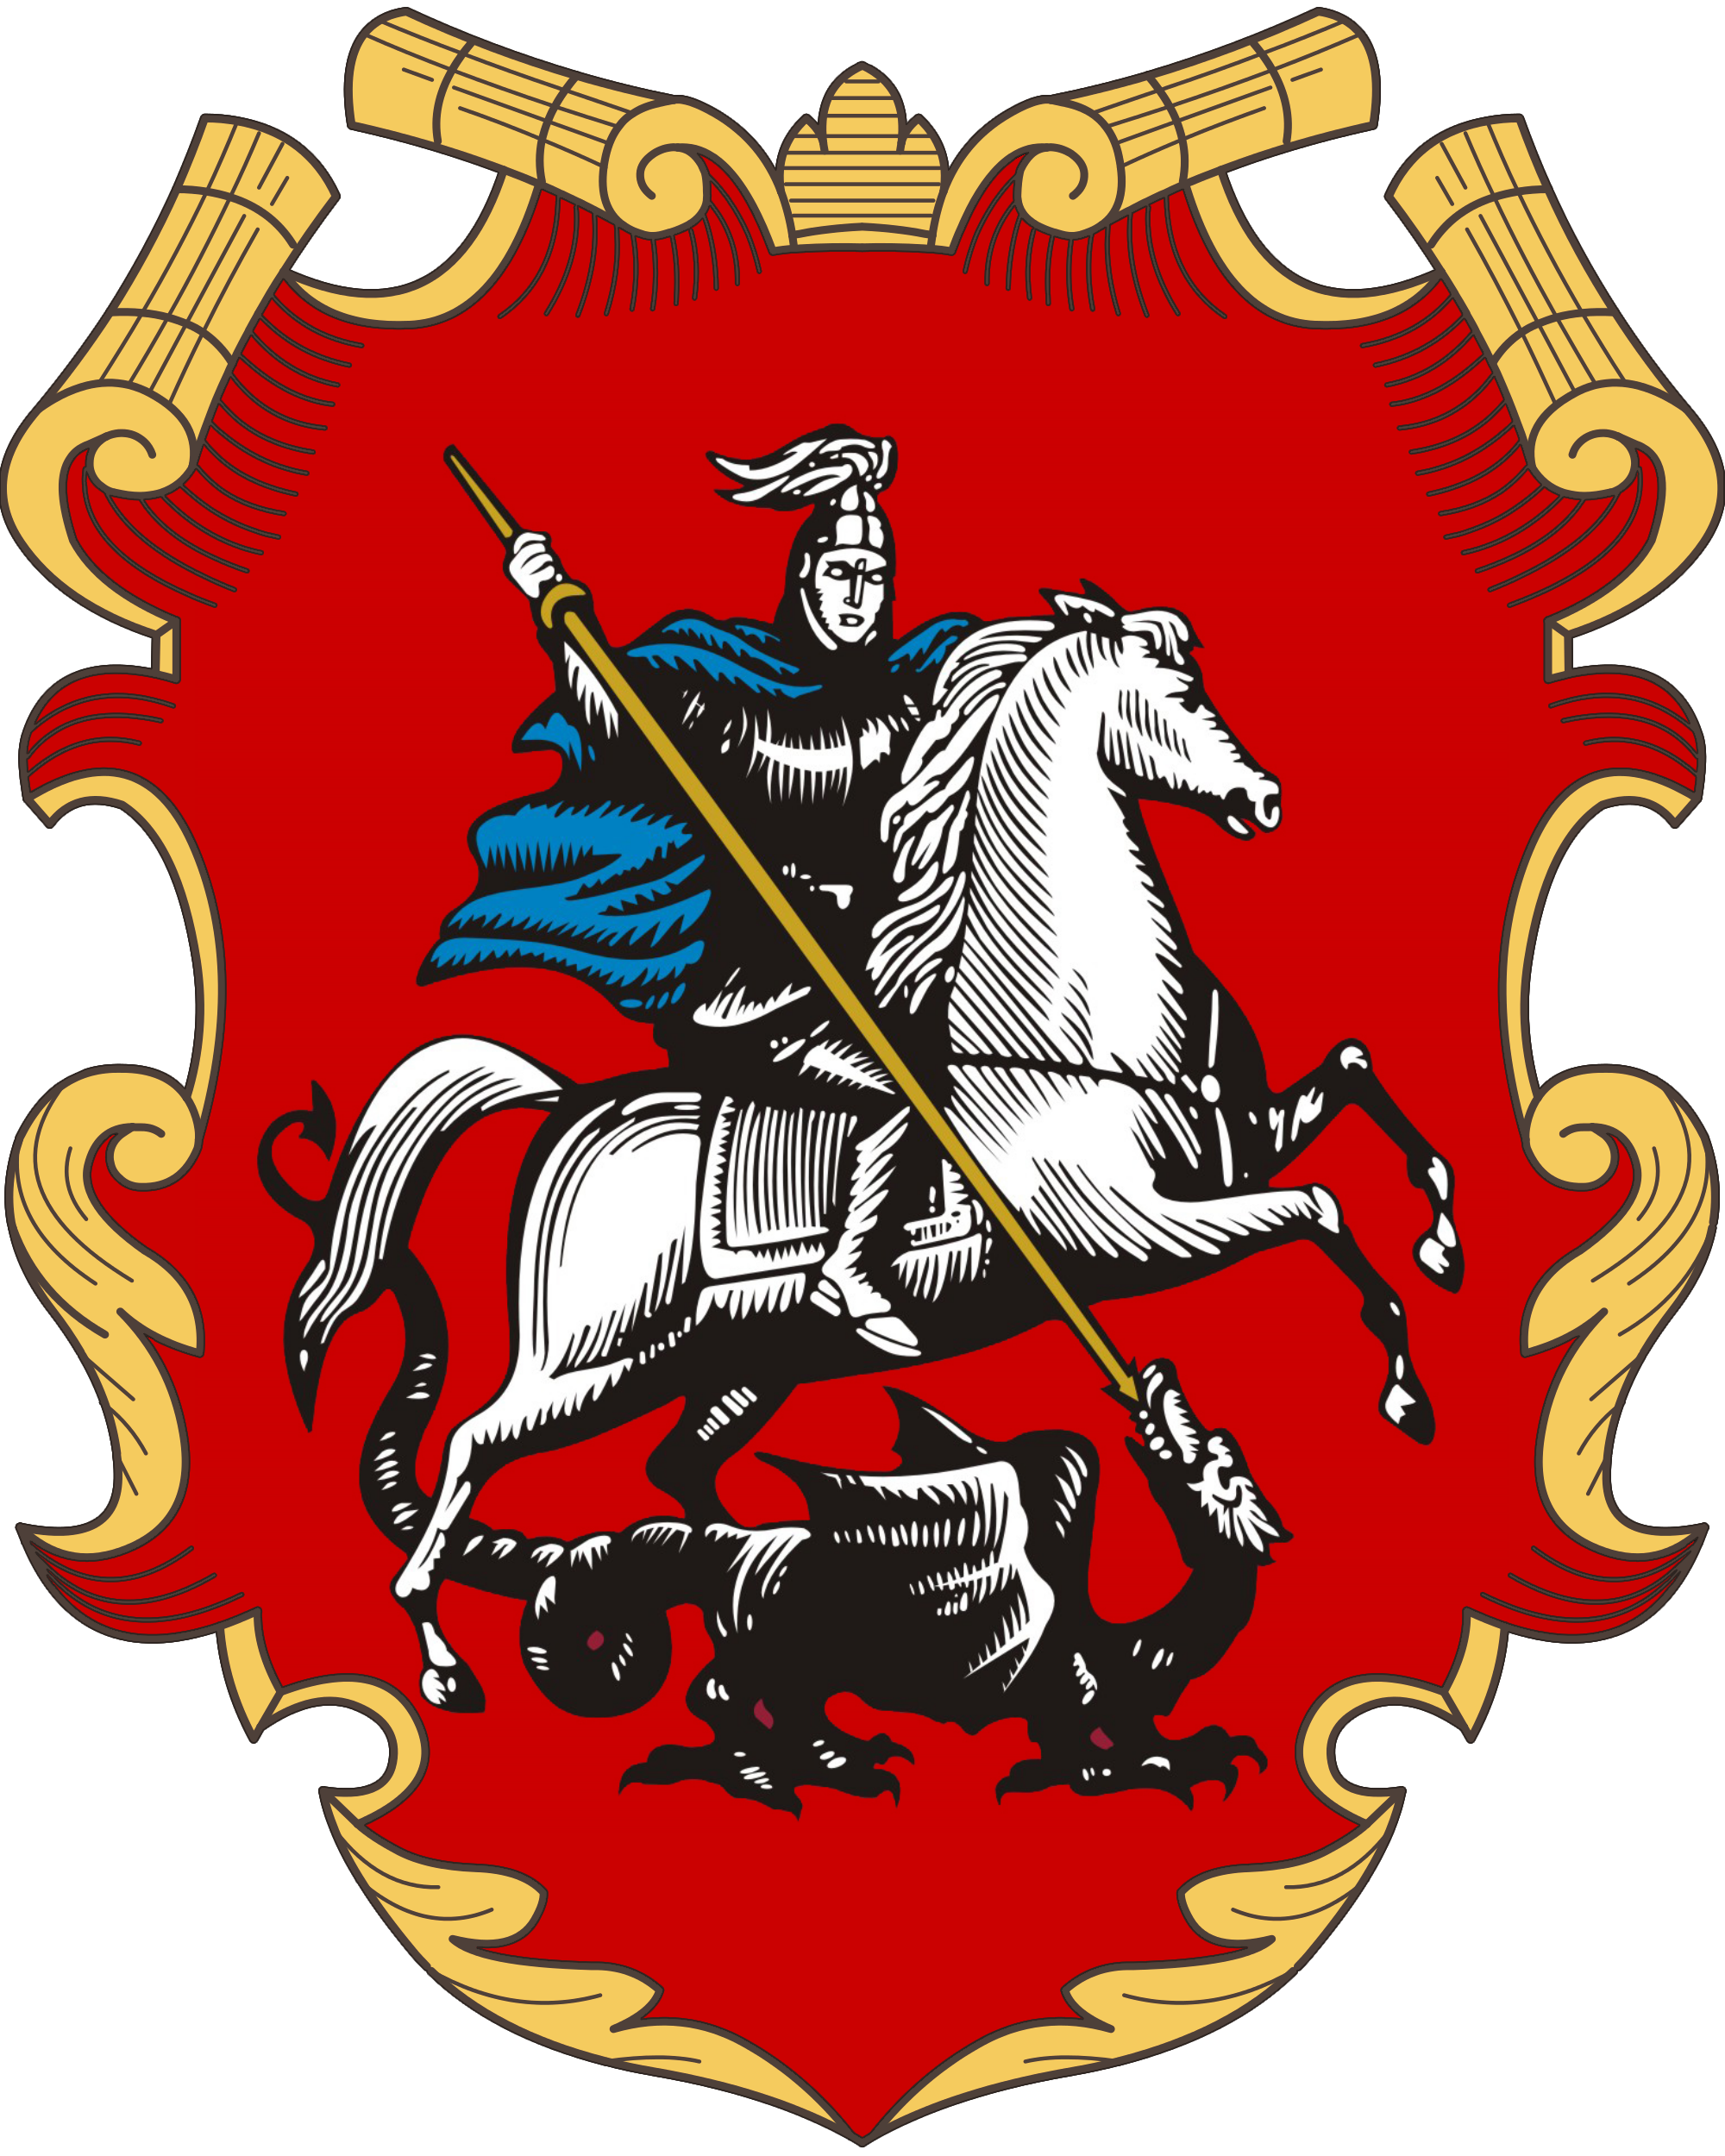 Москва столица россии герб москвы